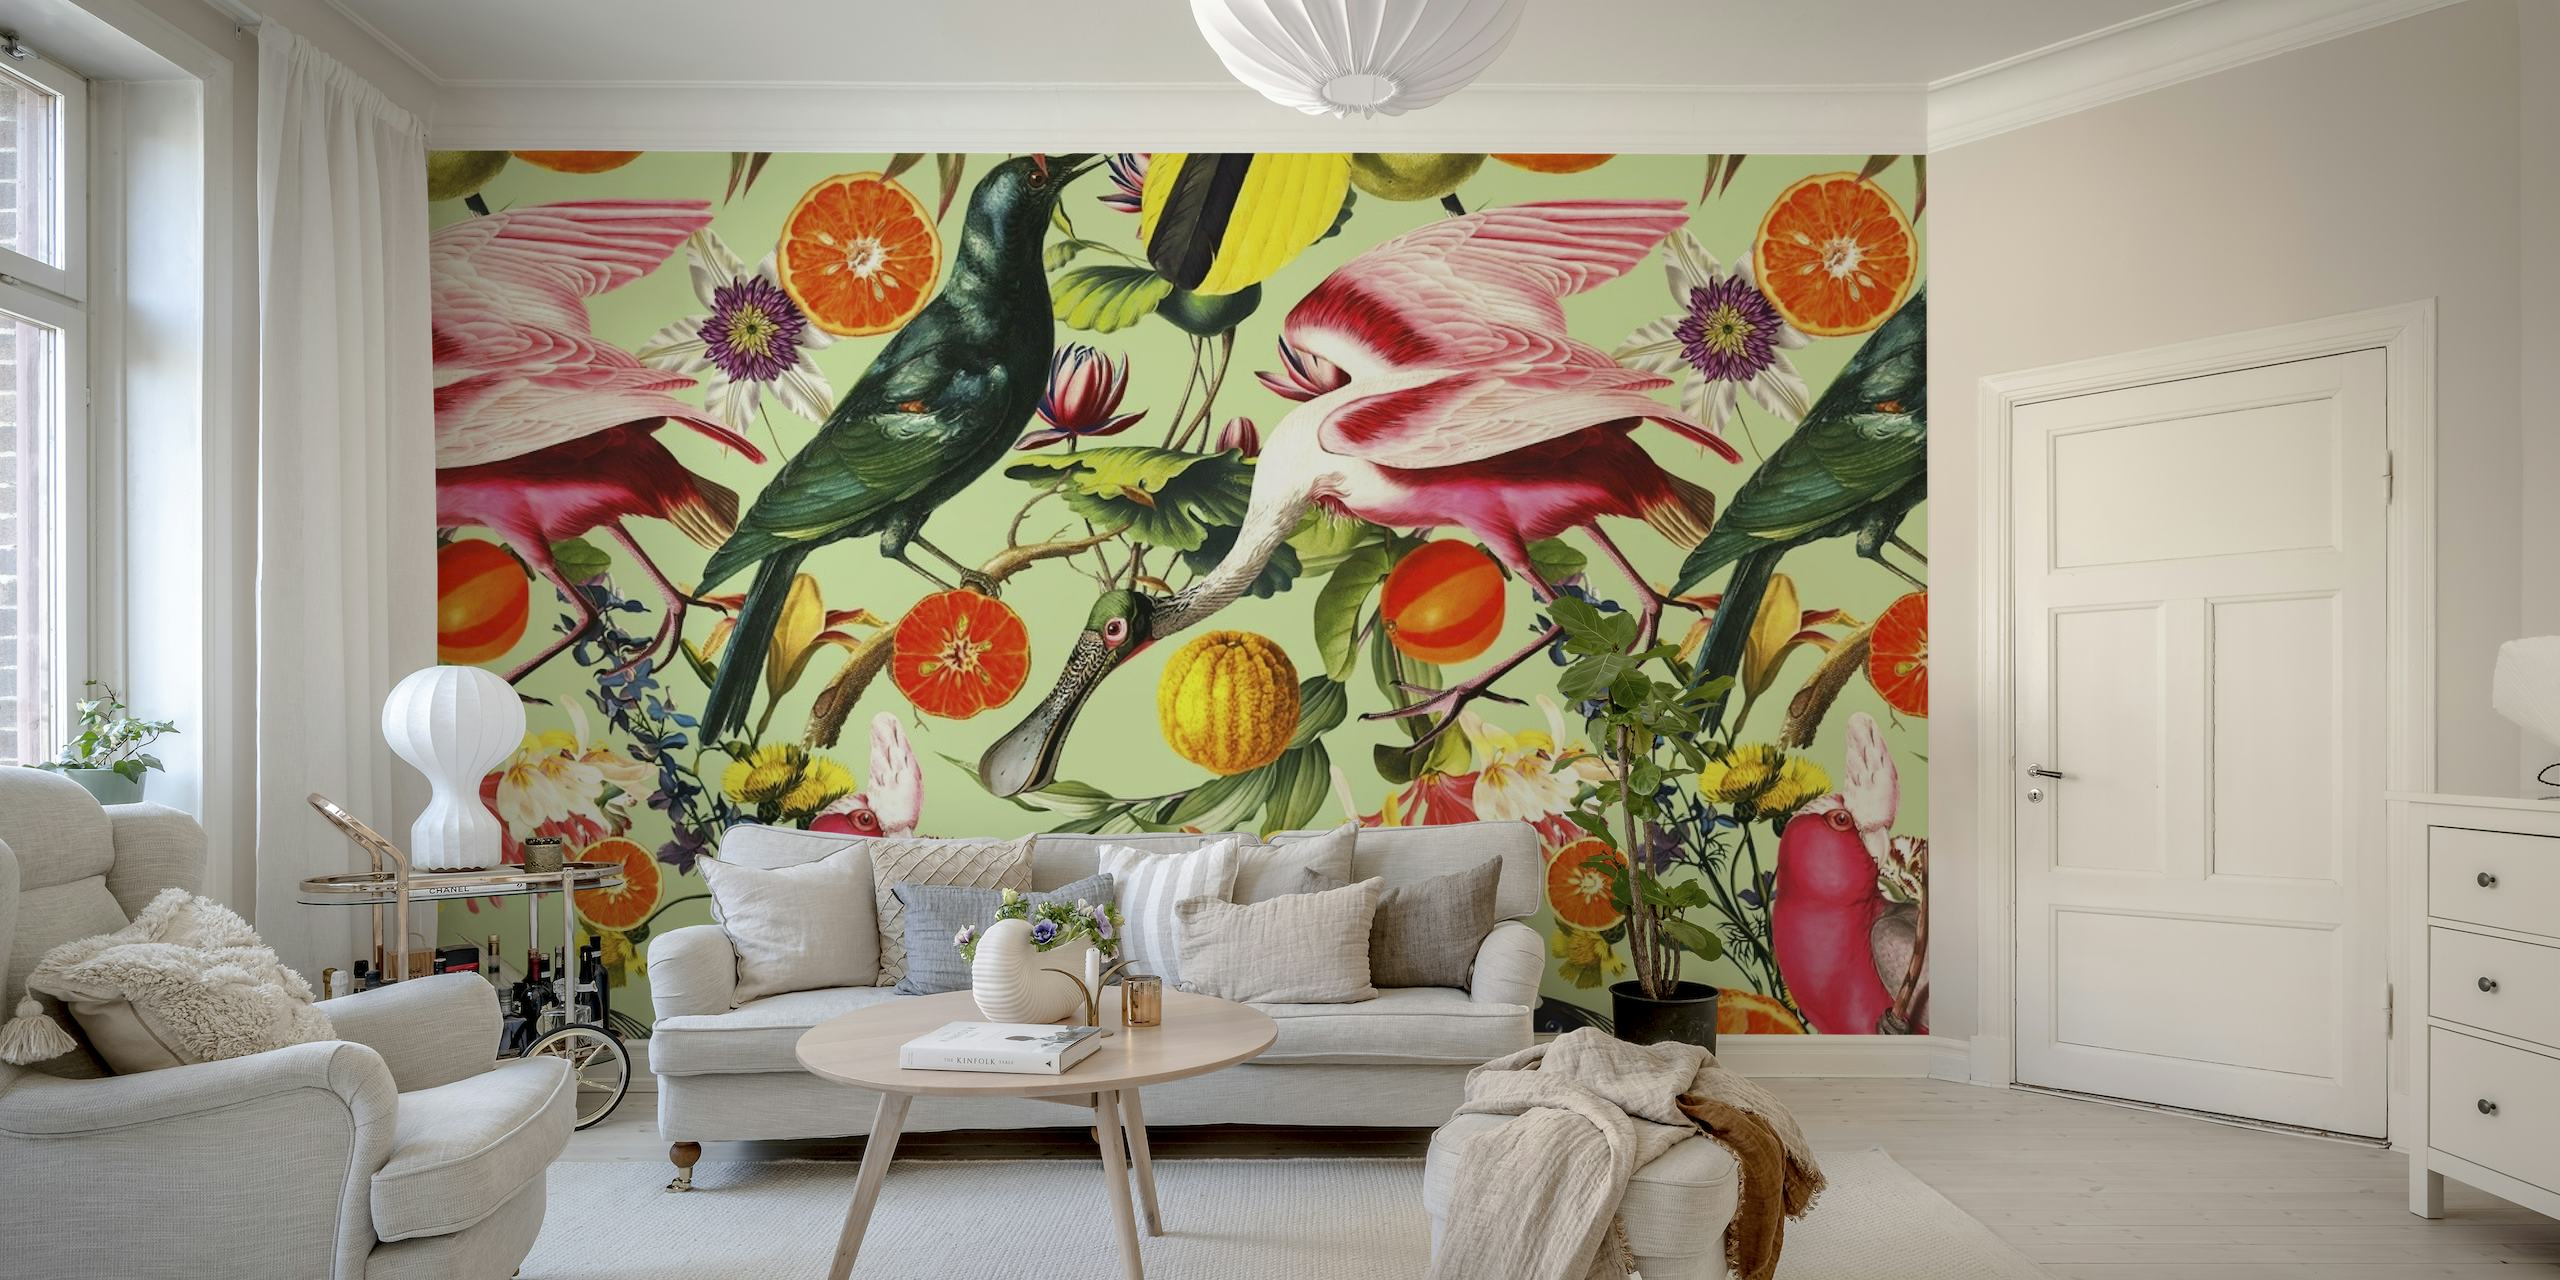 Farbenfrohes Wandbild mit exotischen Vögeln und lebendigen Blumen auf einem ruhigen Hintergrund